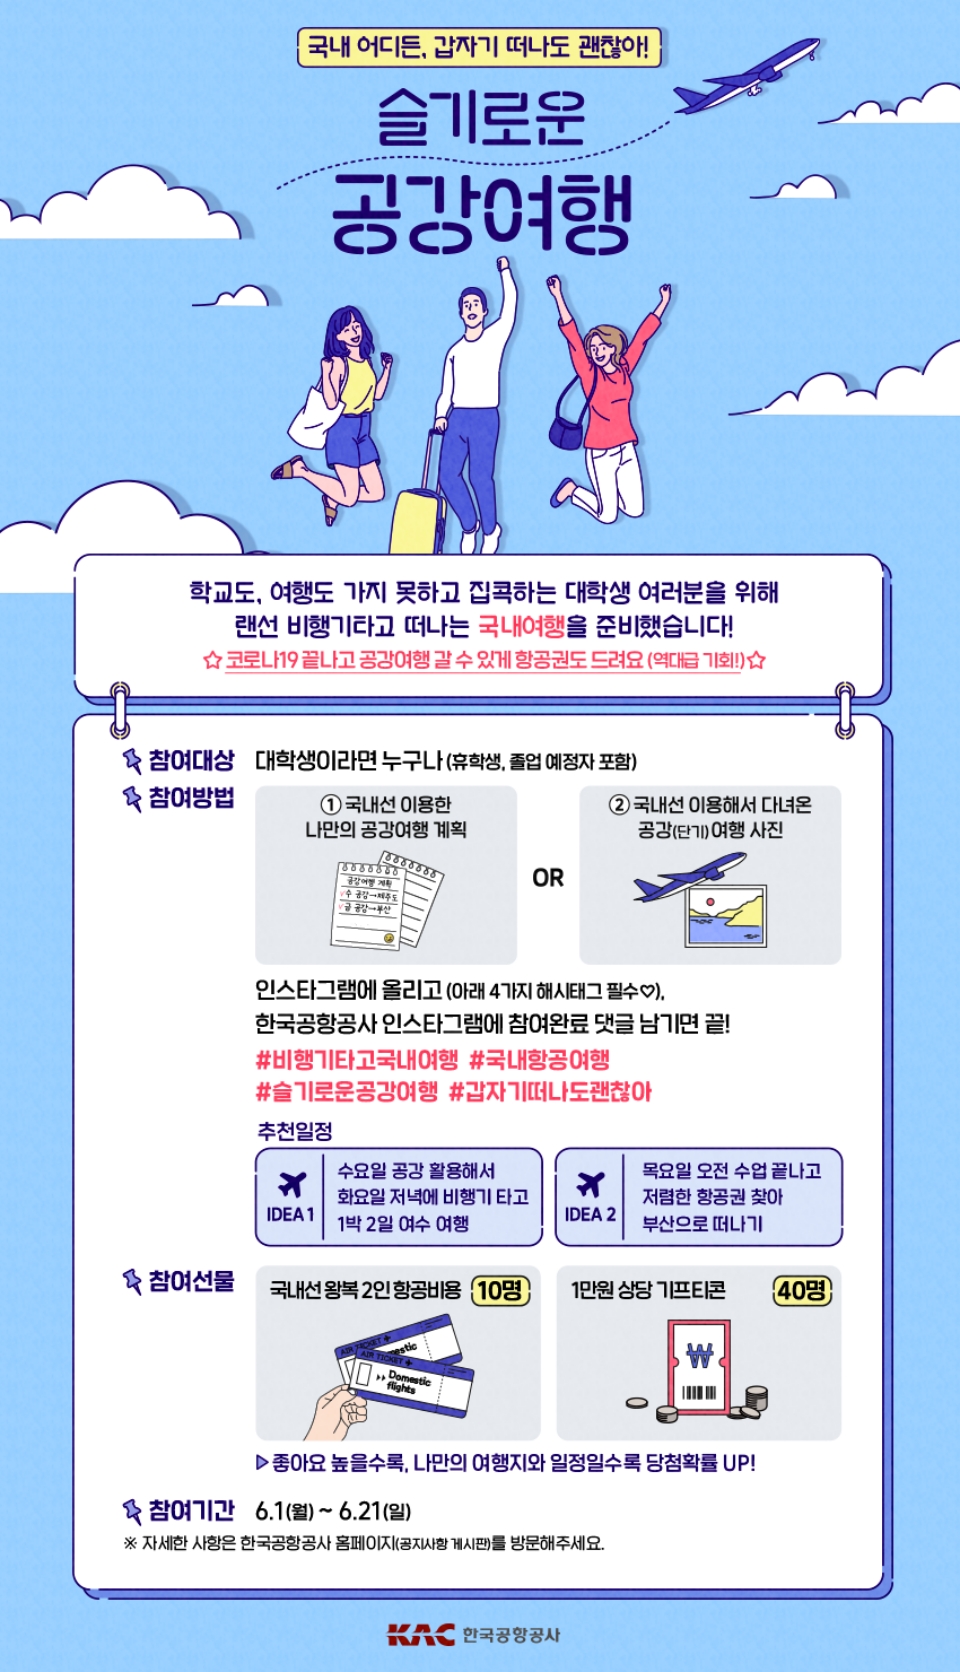 '슬기로운 공강여행' 이벤트 포스터. (자료=한국공항공사)